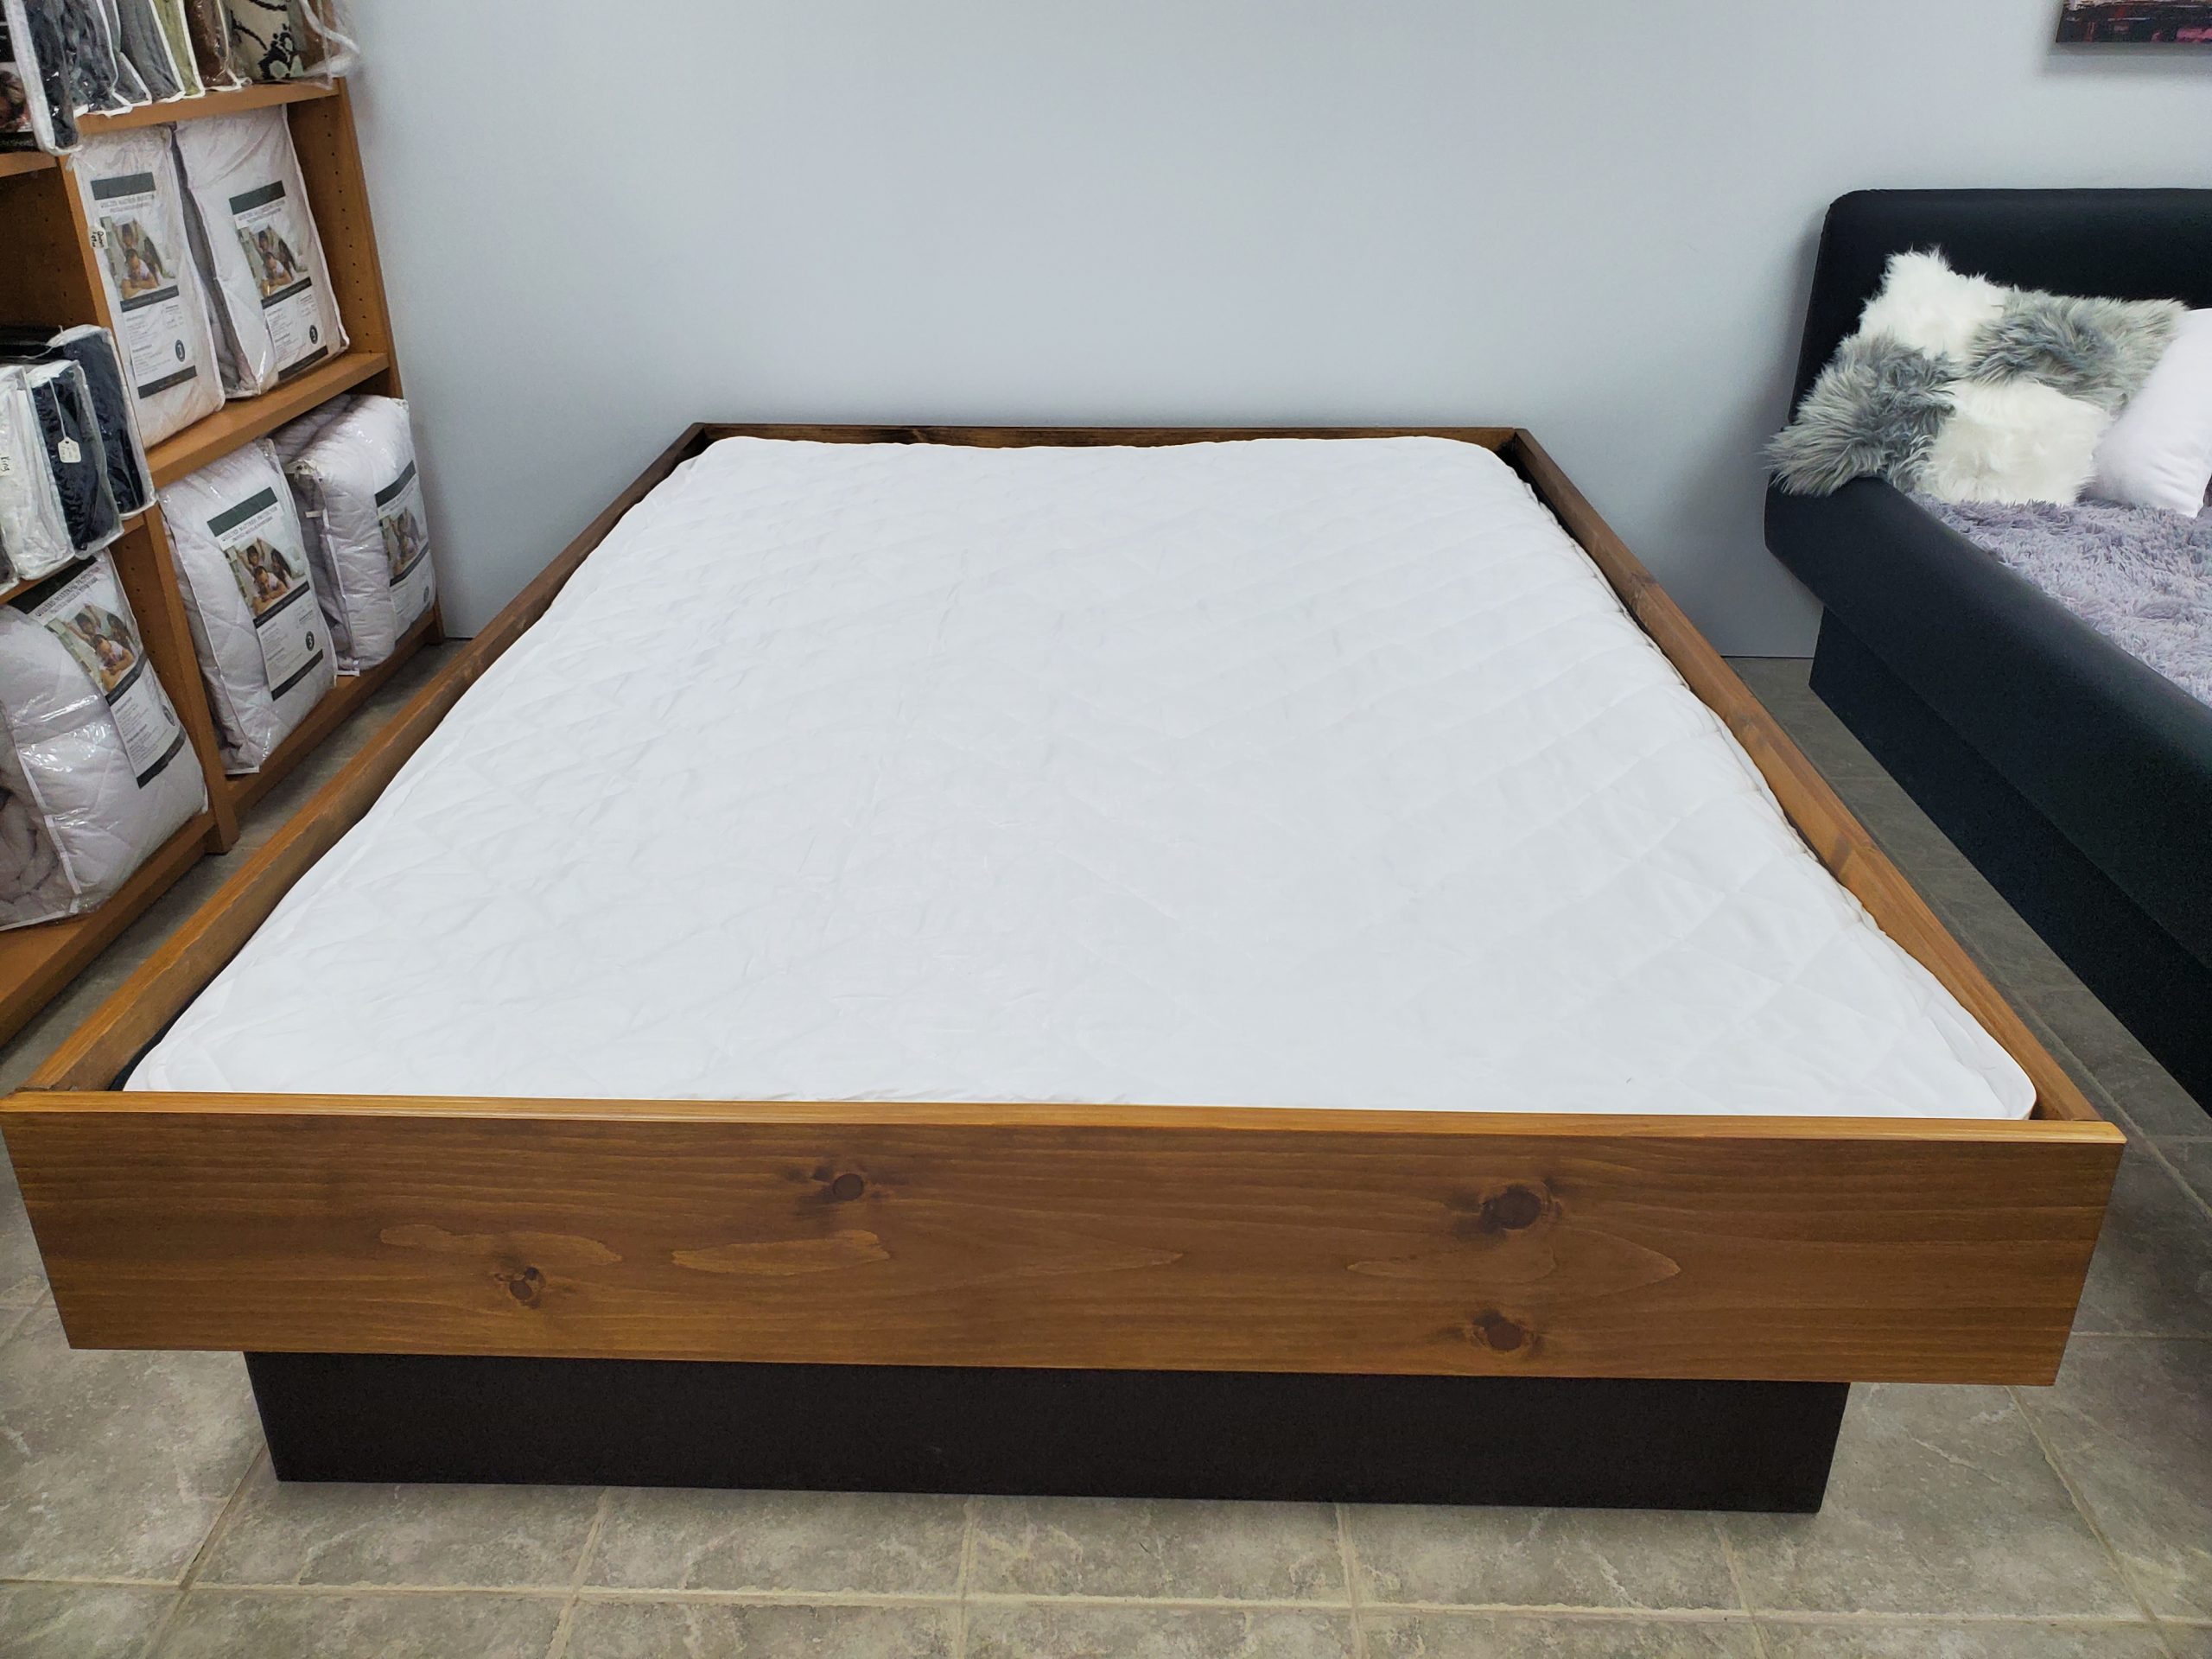 waterbed mattress pad queen